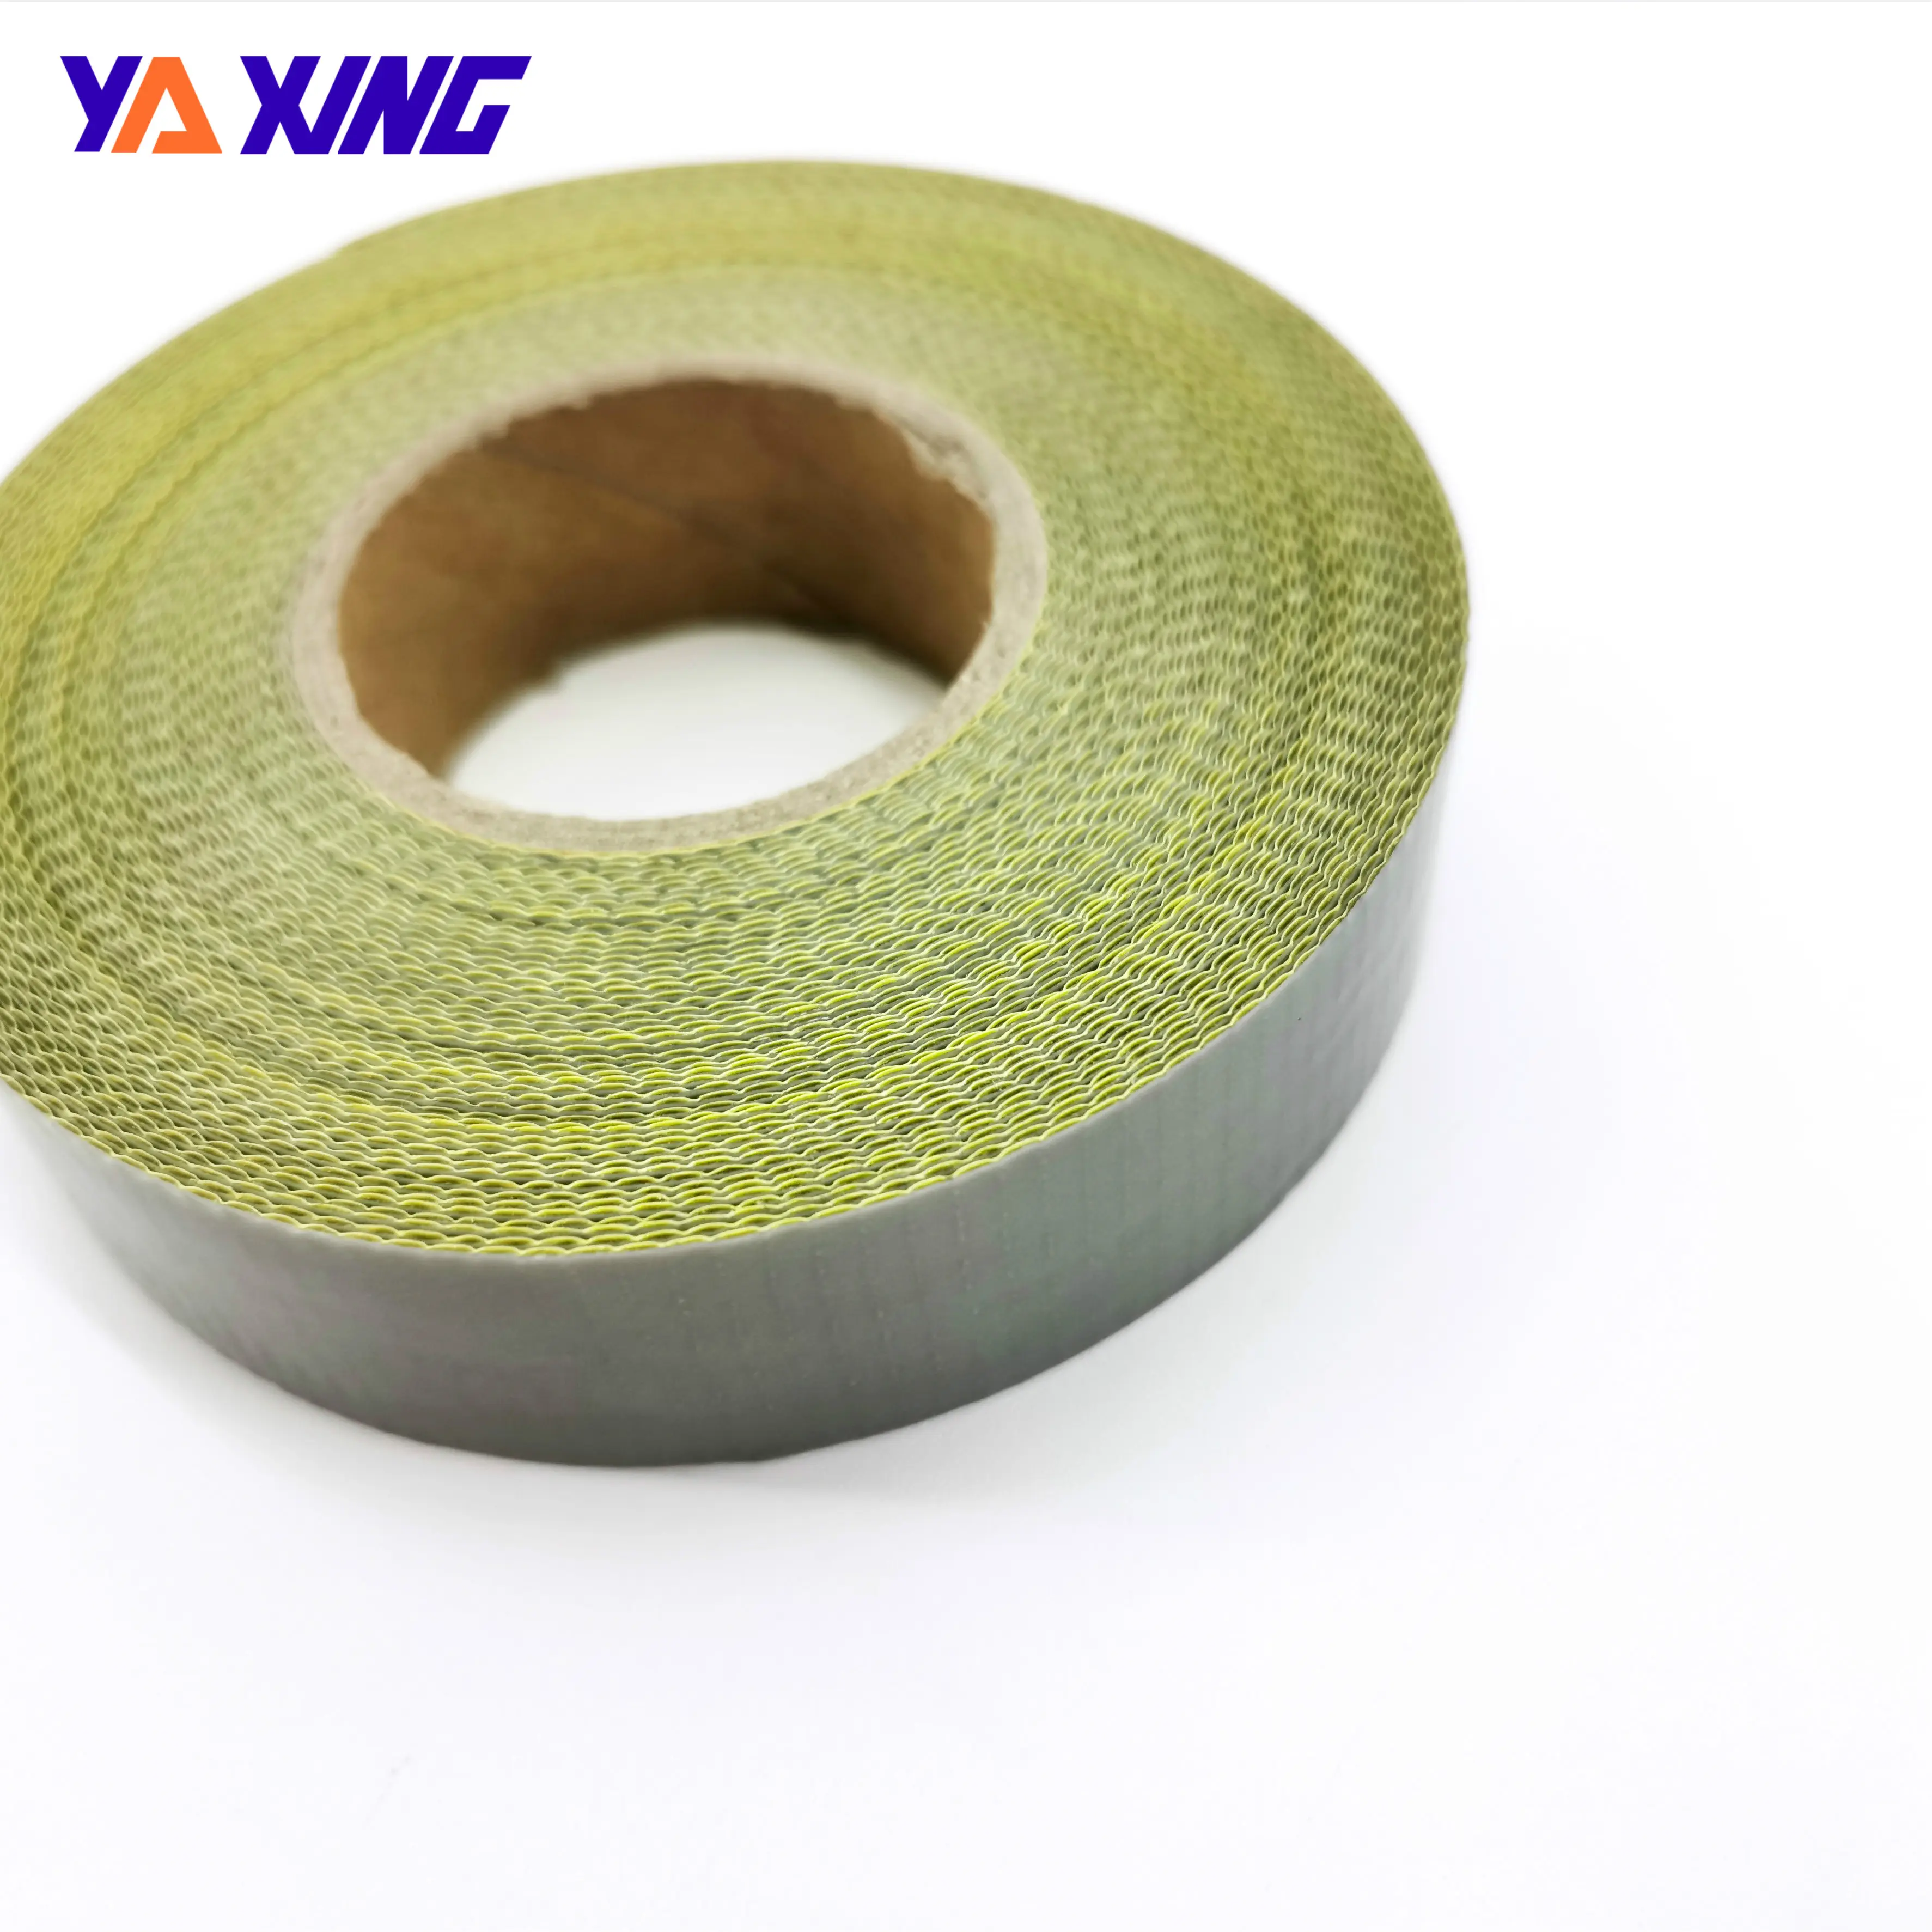 Eat sunsulation Tape 0,13mm-0,55mm hichichichichicoooated dhdhesive ililm Tape